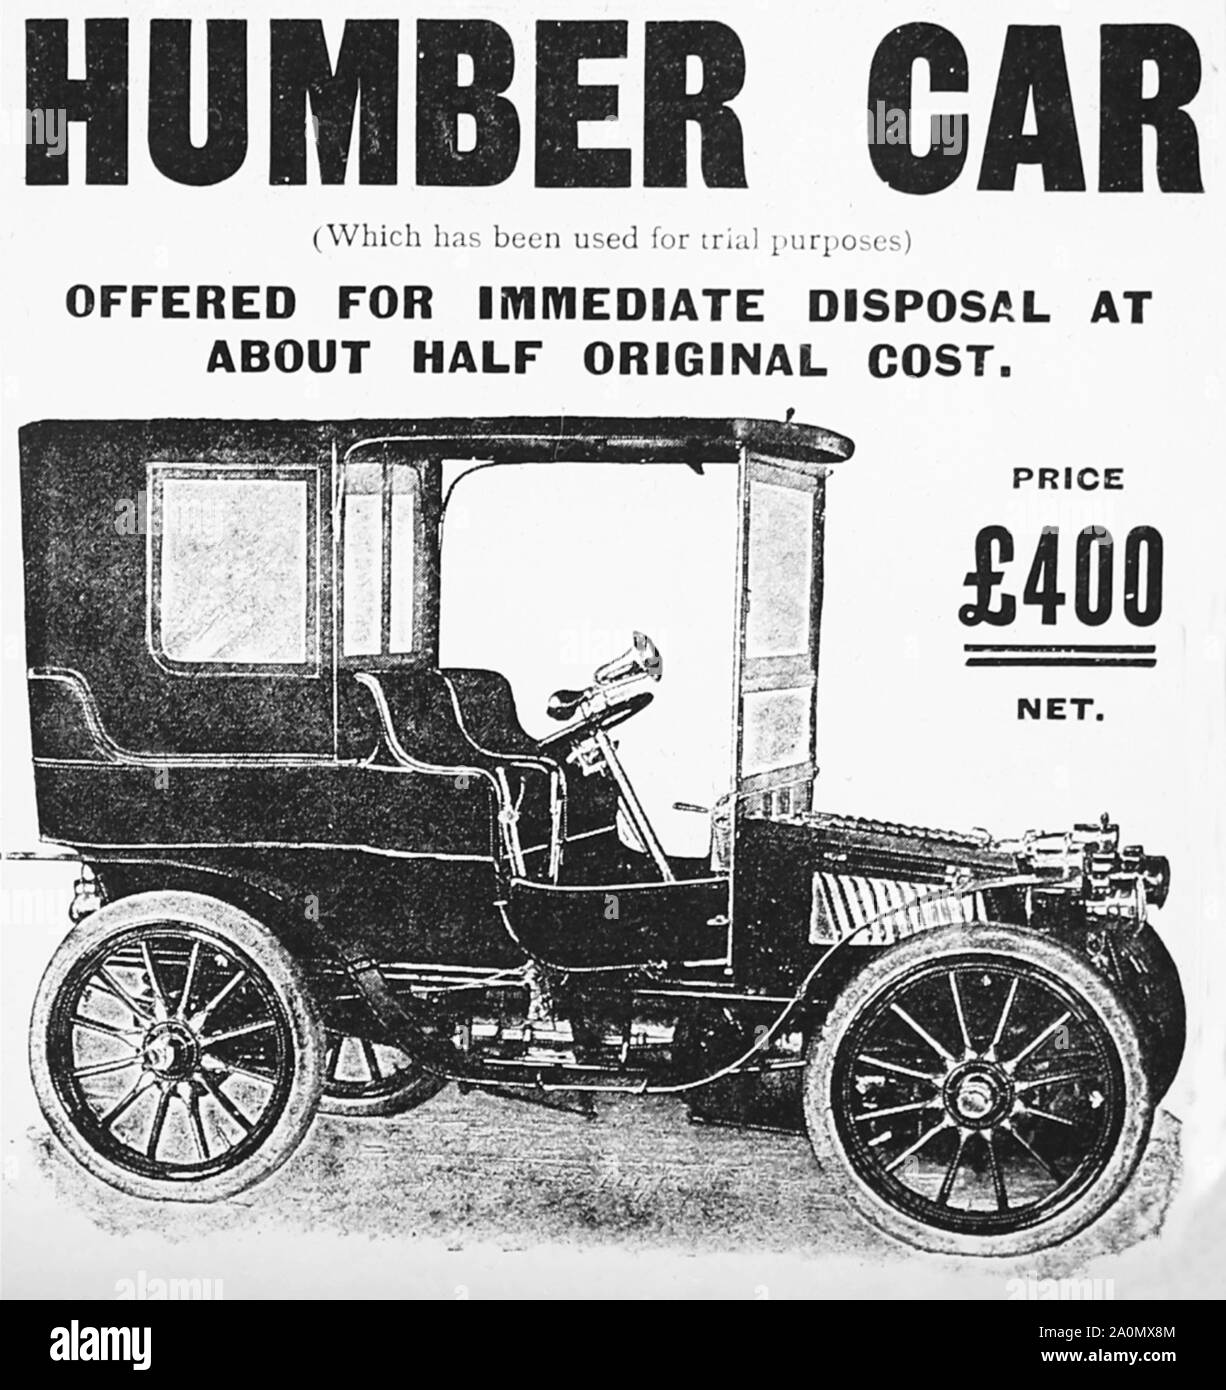 Humber veterano coche anuncio, 1900 Foto de stock